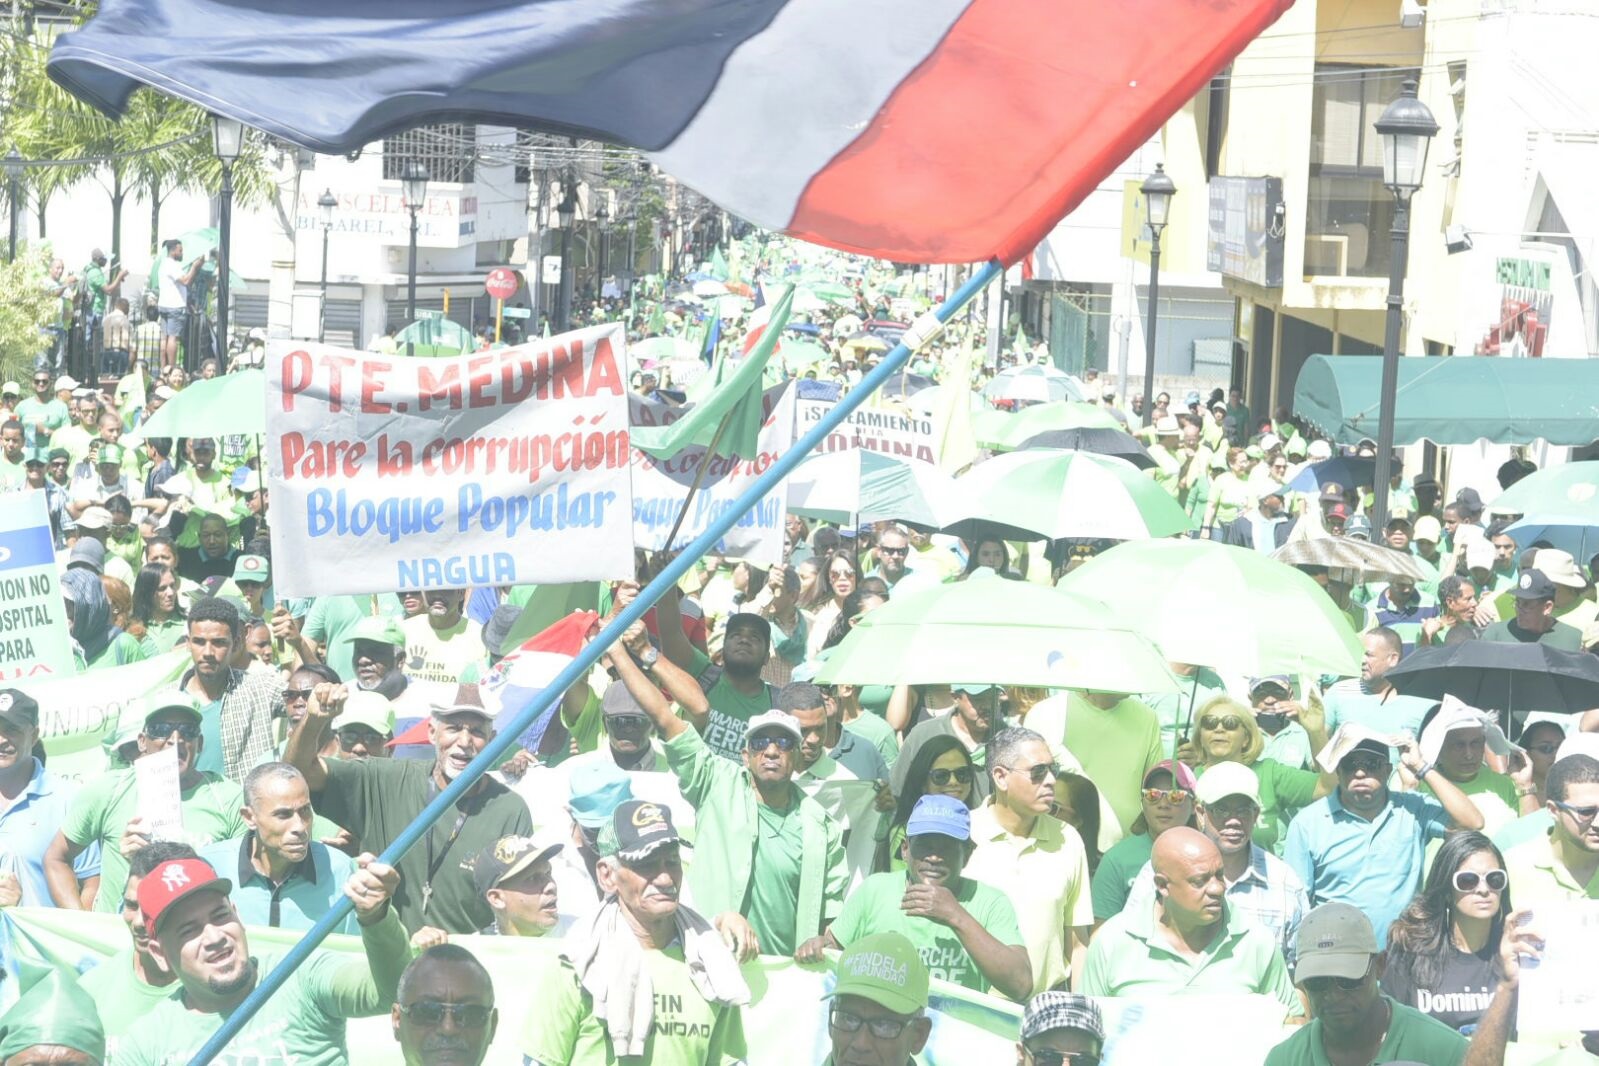 Personas de los diferentes pueblos del país, incluidos del Gran Santo Domingo, se unieron a la Marcha Verde contra la impunidad que se inició a las 10:00 de la mañana desde la intersección de la avenida Presidente Antonio Guzmán con calle Del Sol, en Santiago.